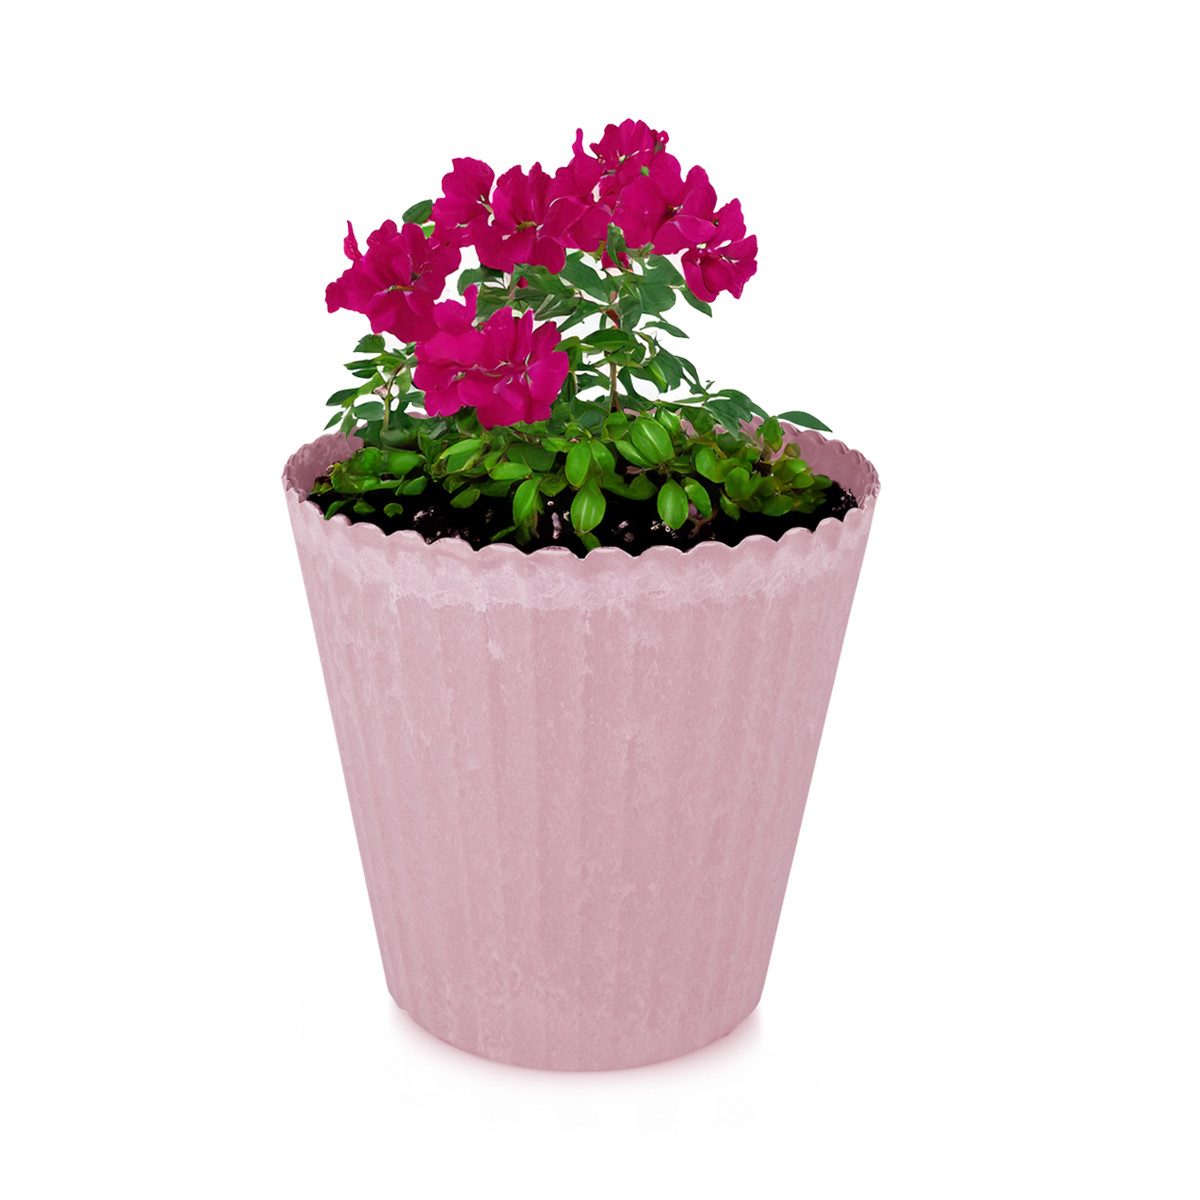 matches21 HOME & HOBBY Blumentopf Blumen-Topf alt-rosa geriffelt als Outdoor Pflanzen-Topf rund 13 cm (1 St), Pflanztopf als Wohnzimmer Übertopf und draussen Pflanzgefäß